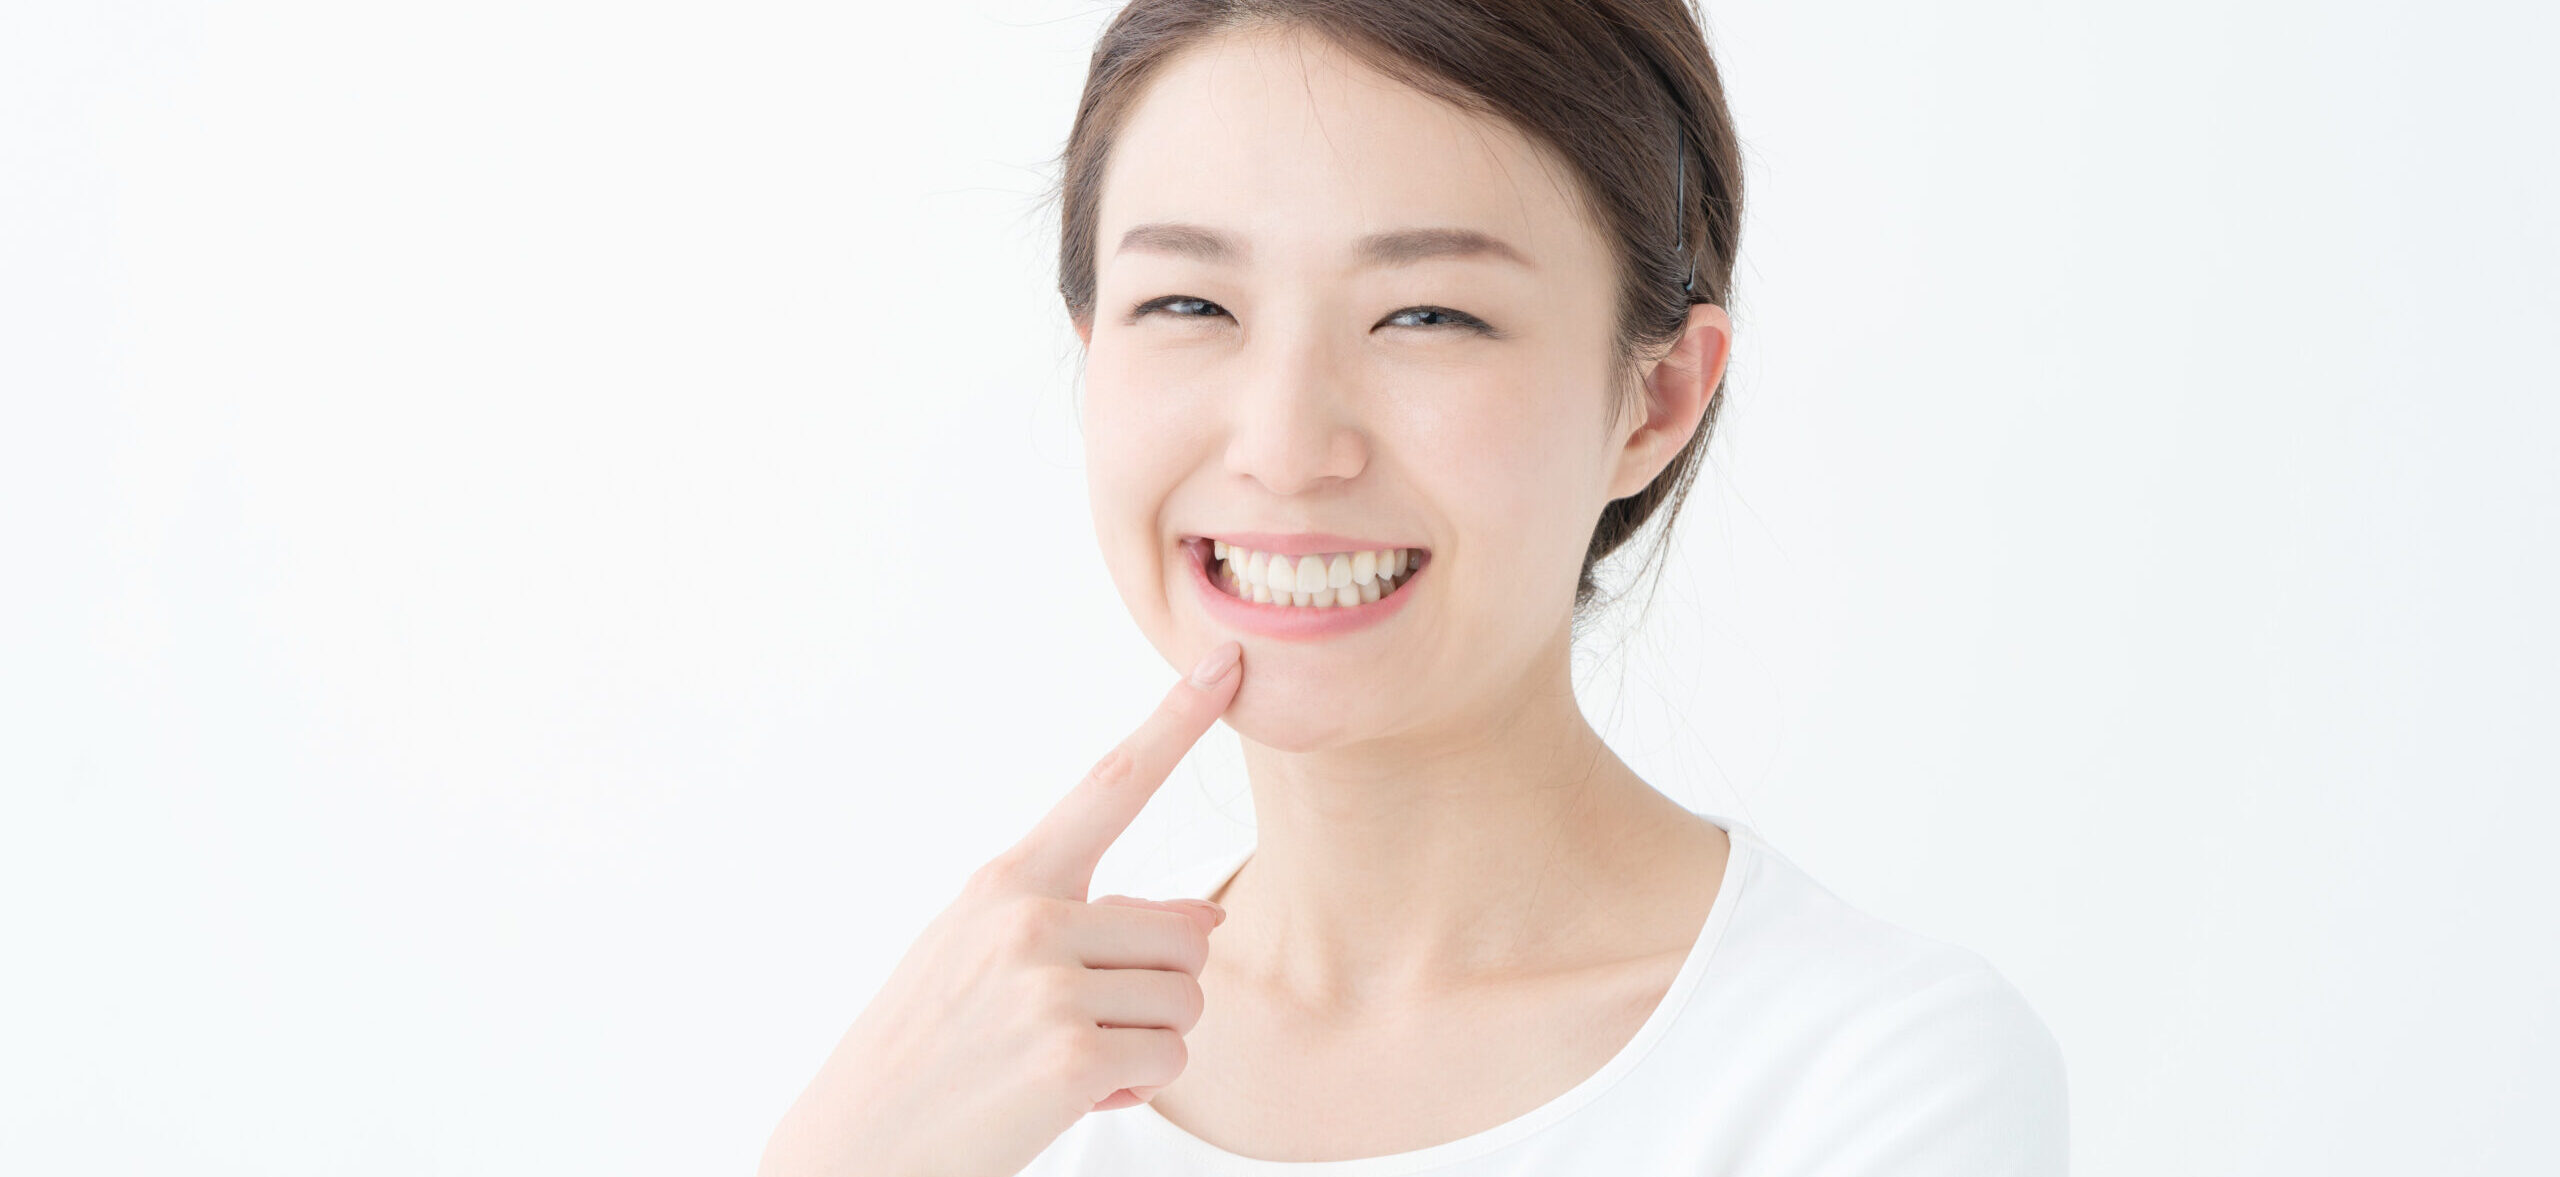 歯の神経を抜く場合の治療法とデメリット